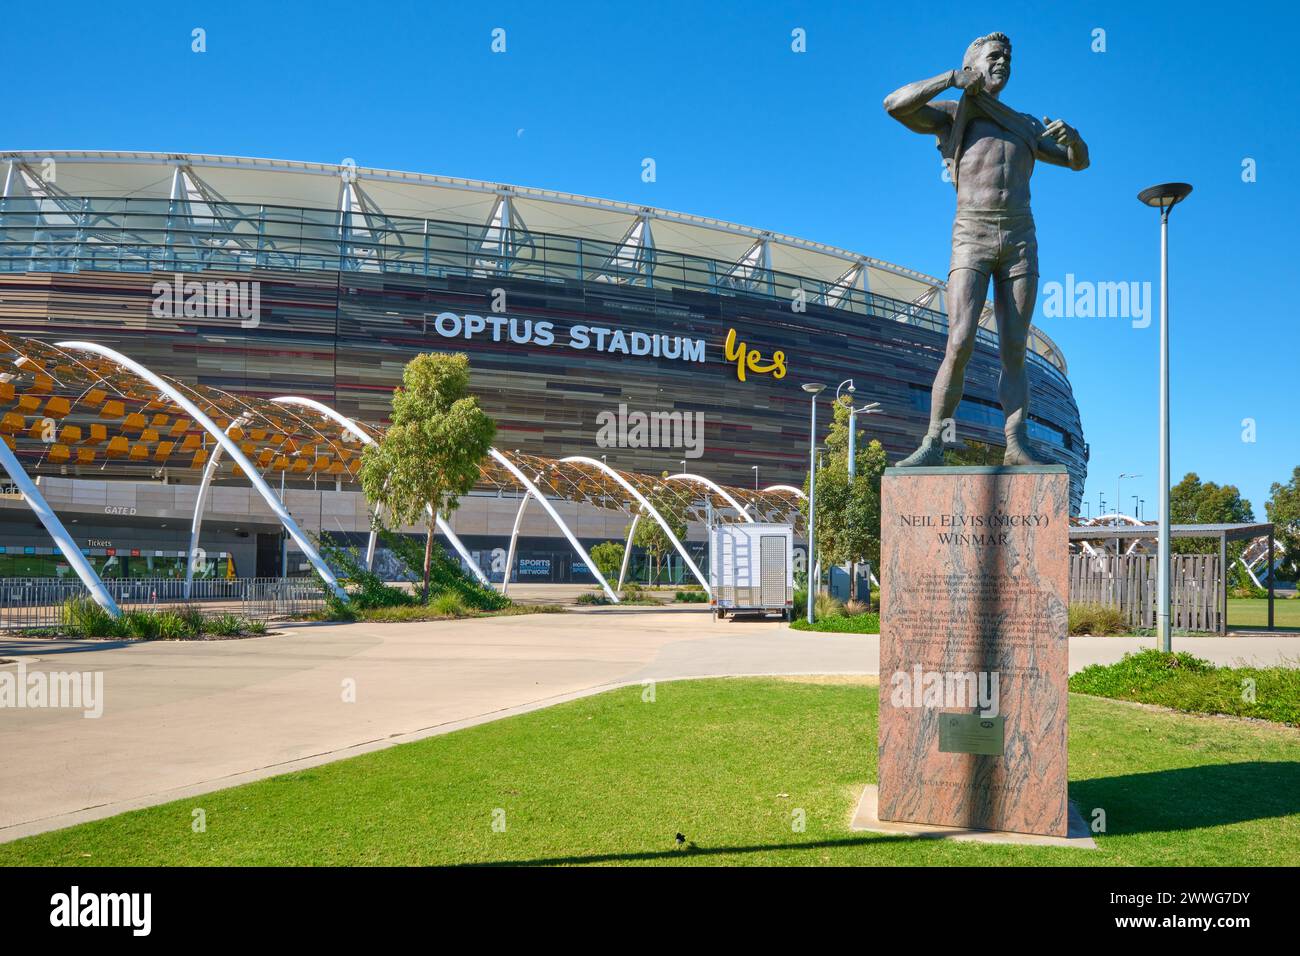 La statua di Nicky Winmar di Louis Laumen fuori dall'Optus Stadium che celebra la posizione di Nicky contro il razzismo durante una partita della AFL, Perth, Australia Occidentale. Foto Stock